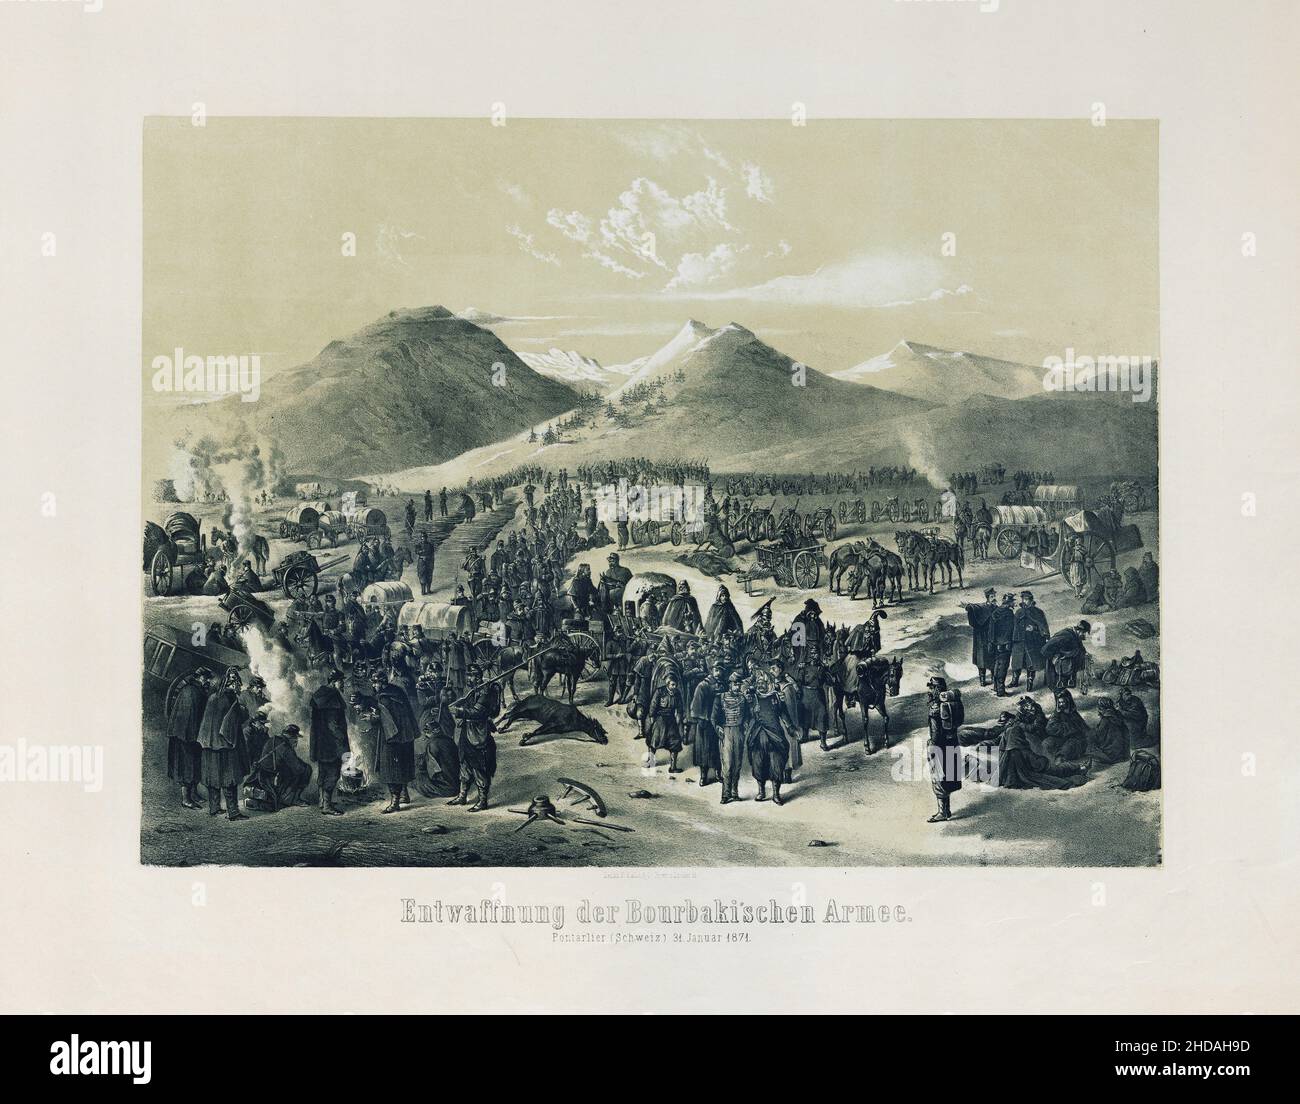 Lithographie des französisch-preußischen Krieges: Entwaffnung der Bourbaki-Armee: Pontarlier (Schweiz) 31. Januar 1871. 1871 Stockfoto